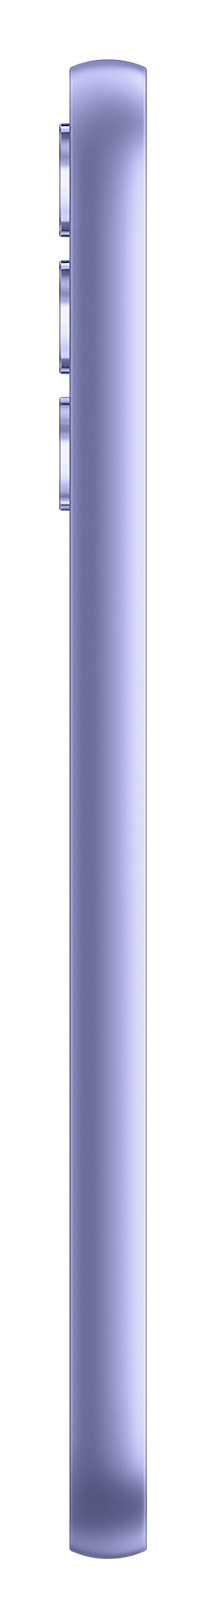 Samsung A34 violet side